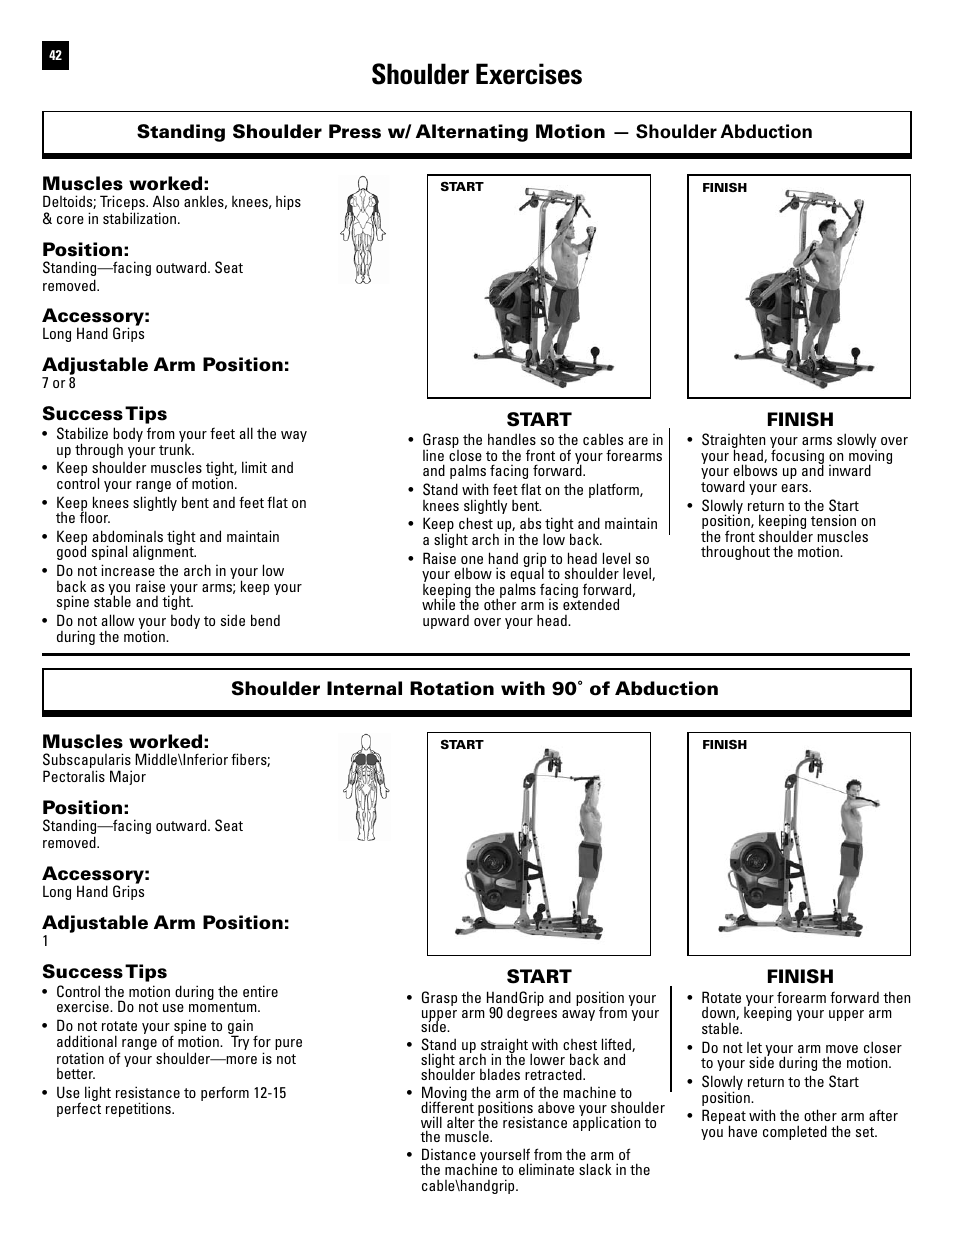 bowflex-pr1000-workout-routine-pdf-kayaworkout-co